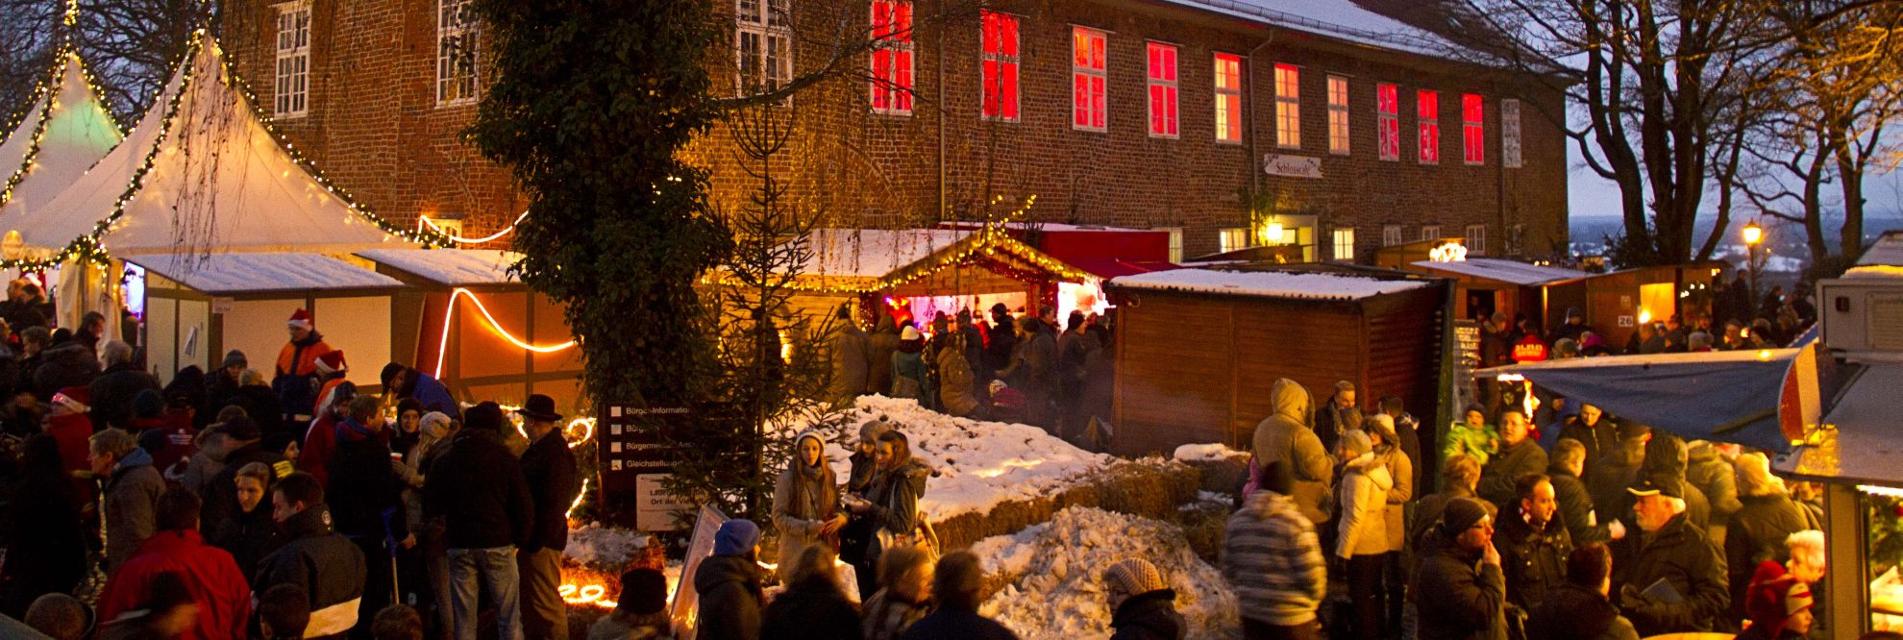 Einer der schönsten Weihnachtsmärkte im Norden vor traumhafter KulisseLauenburger Weihnachtsmarkt am Schloss Bald ist es wieder soweit, der Weihnachtsmarkt 2022 am Lauenburger Schloss öffnet seine Pforten. Einer der schönsten Weihnachtsmärkte im Norden in traumhafter Kulisse direkt auf dem beleuchteten Lauenburger Schlossplatz startet am 3. Adventswochenende. Die Besucher können klassische Weihnachtsmarkt-Leckereien mit fantastischem Ausblick auf die Elbe genießen. Vorweihnachtliche Stimmung kommt auf bei diesem gemütlichen Markt, wenn Kinderaugen leuchten und Glühweinbecher duften.        Los geht es am Freitag, 09. Dezember, um 14.00 Uhr am Schloss, die offizielle Eröffnung in der Maria-Magdalenen-Kirche in der Lauenburger Altstadt beginnt um 16.00 Uhr. Anschließend wird das Weihnachtslicht vom Altar der Kirche zur Krippe auf dem Weihnachtsmarkt getragen. Auch in diesem Jahr bieten zahlreiche Kunsthandwerker und Gastronomen ihre Waren an. Der Weihnachtsmann, seine Engel und lebende Märchenfiguren rund um Rapunzel und Frau Holle gehören wie in den letzten Jahren zum Programm.        Dazu wird es wieder ein großes Bühnenprogramm mit Aktionen, Lesungen und viel Musik geben. Auch der „Lebendige Adventskalender“ findet in diesem Jahr auf der Bühne statt! Für die Kinder wird es ein Märchenzelt am Schloss geben. Ein weiteres Highlight wird wieder der Lichterwald „Winterträume“ im Park am Stadtentwicklungsamt sein. Ein übergroßer beleuchteter Mond zeigt den Besuchern den Weg zum illuminierten Lichterwald-Eingang.      Programm:        Lauenburger Weihnachtsmarkt-Programm 09.12.16.00 Uhr: Weihnachtsmarkt-Eröffnung in der Maria-Magdalenen-Kirche mit dem Shantychor „Die Kielschweine“, dem Kinderchor der ev. Kita „Elbnest“, Bürgervorsteher Wilhelm Bischoff und Pastor Ulrich Billet18.00 Uhr: Lebendiger Adventskalender mit Pastor Ulrich Billet19.00 Uhr: Rock’n’Roll-Christmas mit „MIKEL ONETWO“ Lauenburger Weihnachtsmarkt-Programm 10.12.14.30 Uhr: Plattdeutsche Wiehnacht mit Rüdiger Ulrich16.00 Uhr: Der Weihnachtsmann liest im Märchenzelt16.30 Uhr: Weihnachtsliedersingen mit Pastor Ulrich Billet und Katja Gerkensmeyer-Billet17.30 Uhr: Frau Holle lässt es vom Schlossturm schneien18.00 Uhr: Lebendiger Adventskalender mit Pastor Ulrich Billet19.00 Uhr: Glühwein-Party mit der Coverband „MAMALOO“ Lauenburger Weihnachtsmarkt-Programm 11.12.14.00 Uhr: Weihnachtliches mit den Musiküssen16.00 Uhr: Der Weihnachtsmann liest im Märchenzelt16.30 Uhr: Singer-Songwriter BEN BOLES17.30 Uhr: Frau Holle lässt es vom Schlossturm schneien18.00 Uhr: Lebendiger Adventskalender mit Pastor Billet und dem Posaunenchor der ev. Kirchengemeinde                                          Geöffnet hat der Weihnachtsmarkt am 09.12. ab 14.00 Uhr, sowie am 10. und 11.12., samstags von 14 bis 22 Uhr und sonntags von 12 Uhr bis 19 Uhr, es gelten die aktuellen Corona-Regeln. Der Lauenburger Weihnachtsmarkt am Schloss – immer eine Reise wert!  